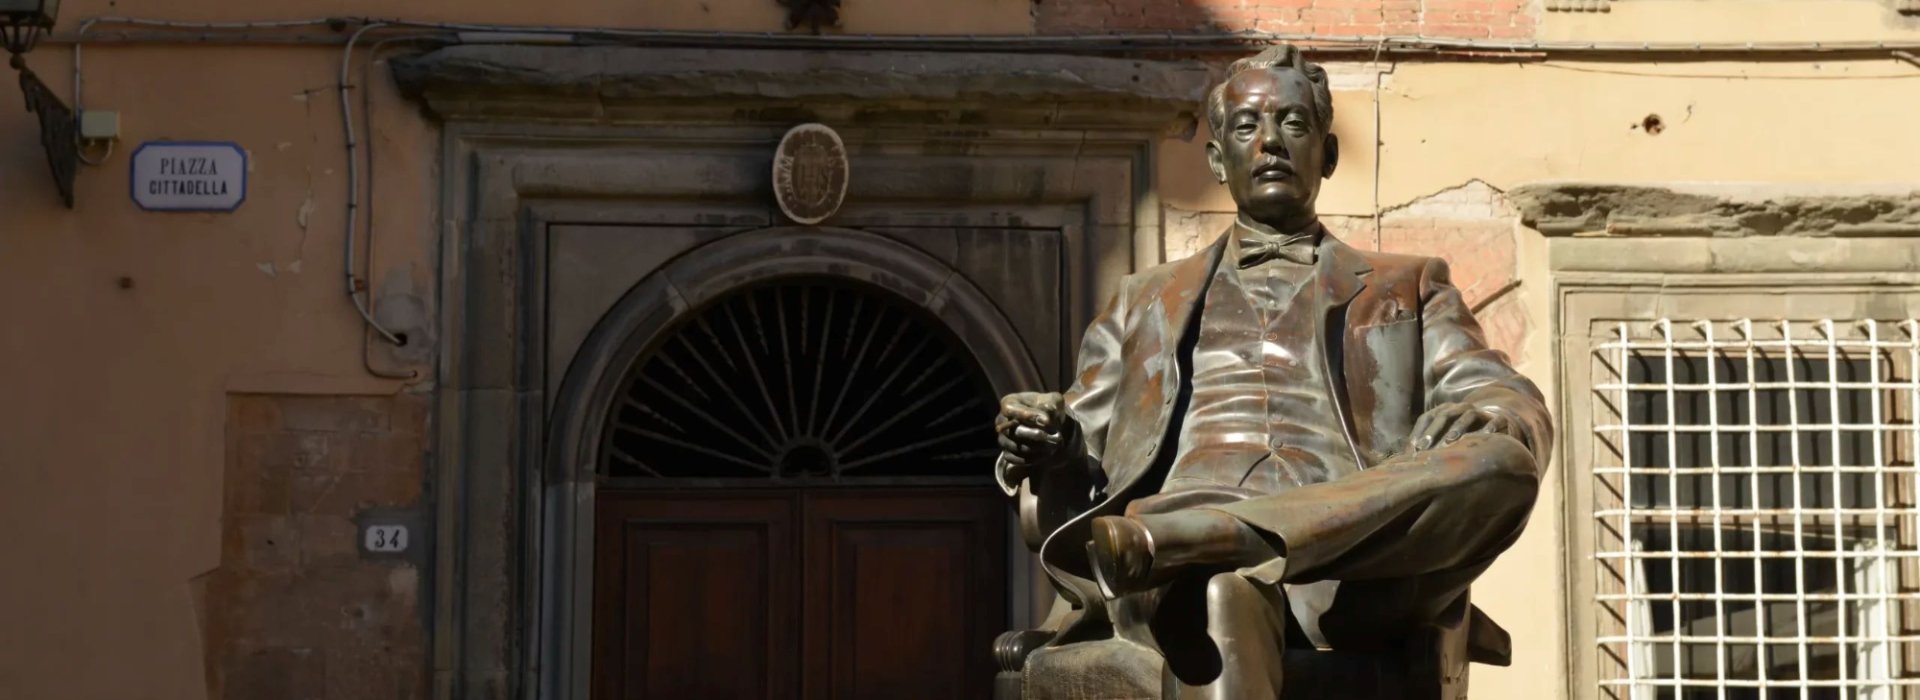 Un tour della città di Lucca nei luoghi cari al maestro Giacomo Puccini